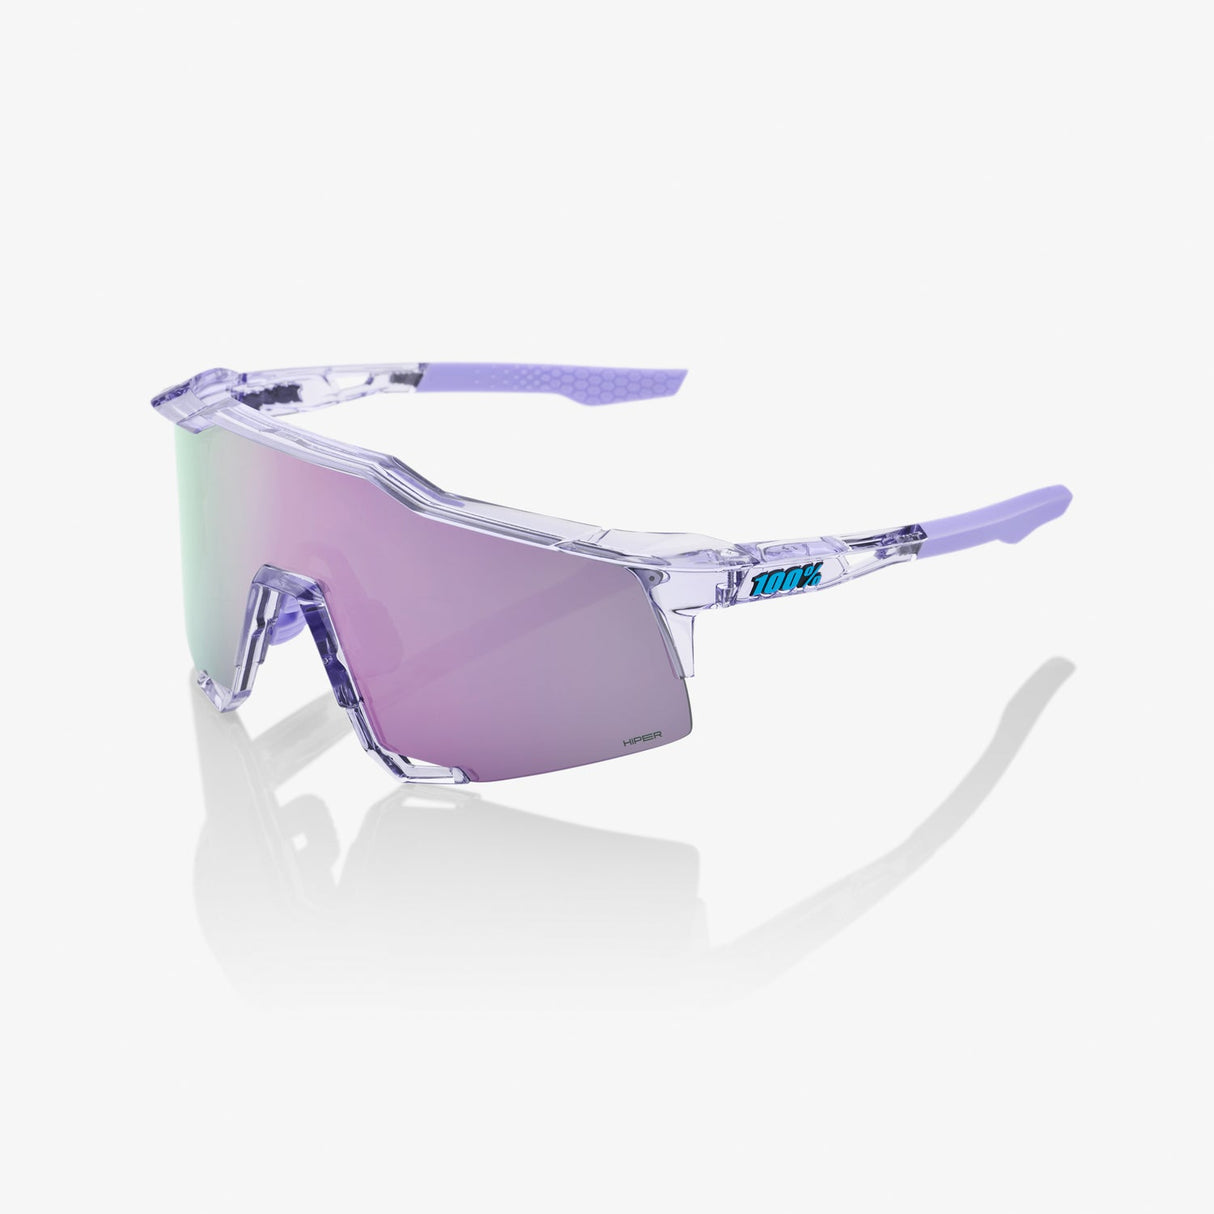 100% Sunglasses SPEEDCRAFT - Polished Translucent Lavender - HiPER Lavender Mirror Lens